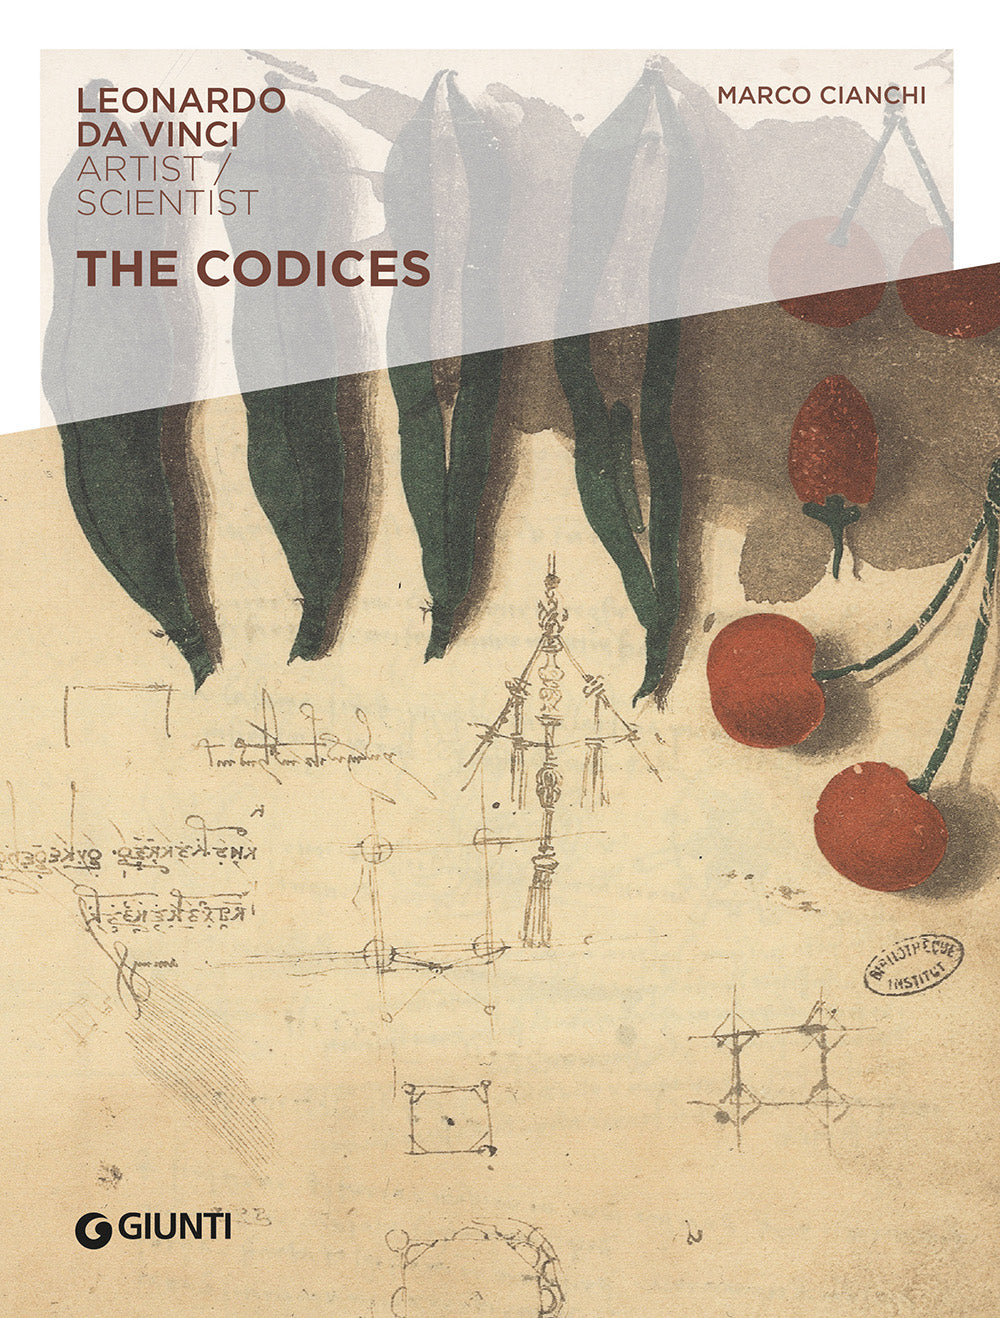 The Codices::Leonardo da Vinci. Artist/Scientist